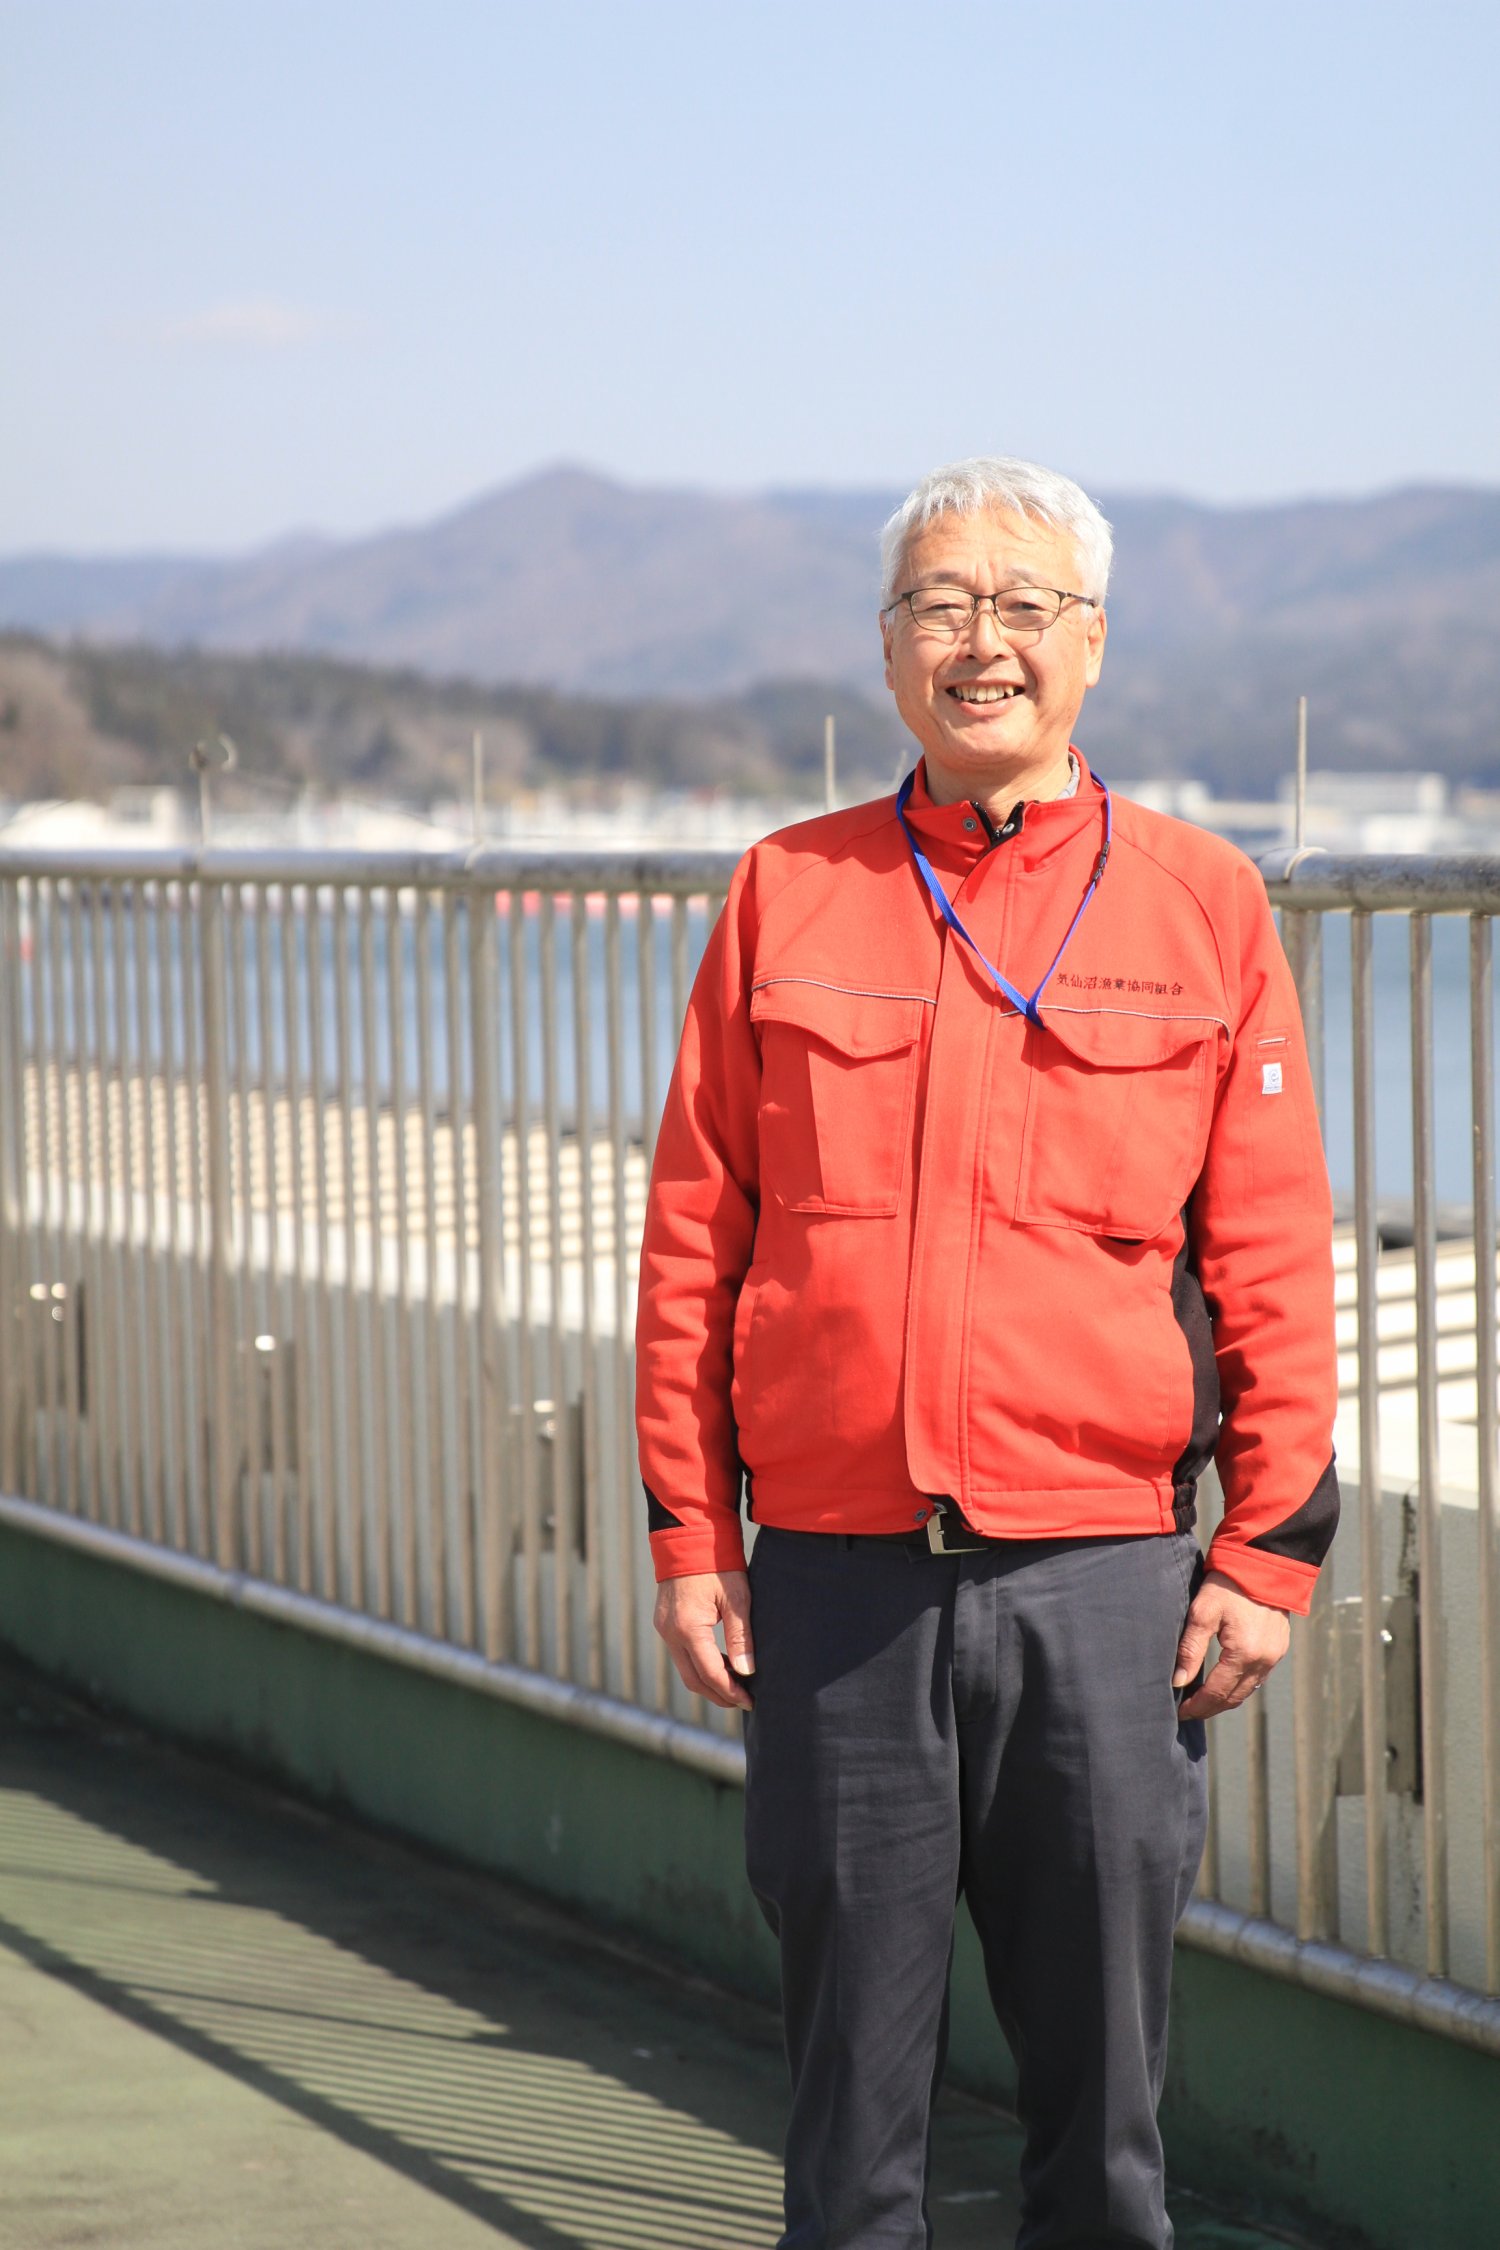 「カツオの盛漁期、港で水揚げを待つ船が並ぶ風景は圧巻です」と、気仙沼漁業協同組合参事の臼井靖さん。